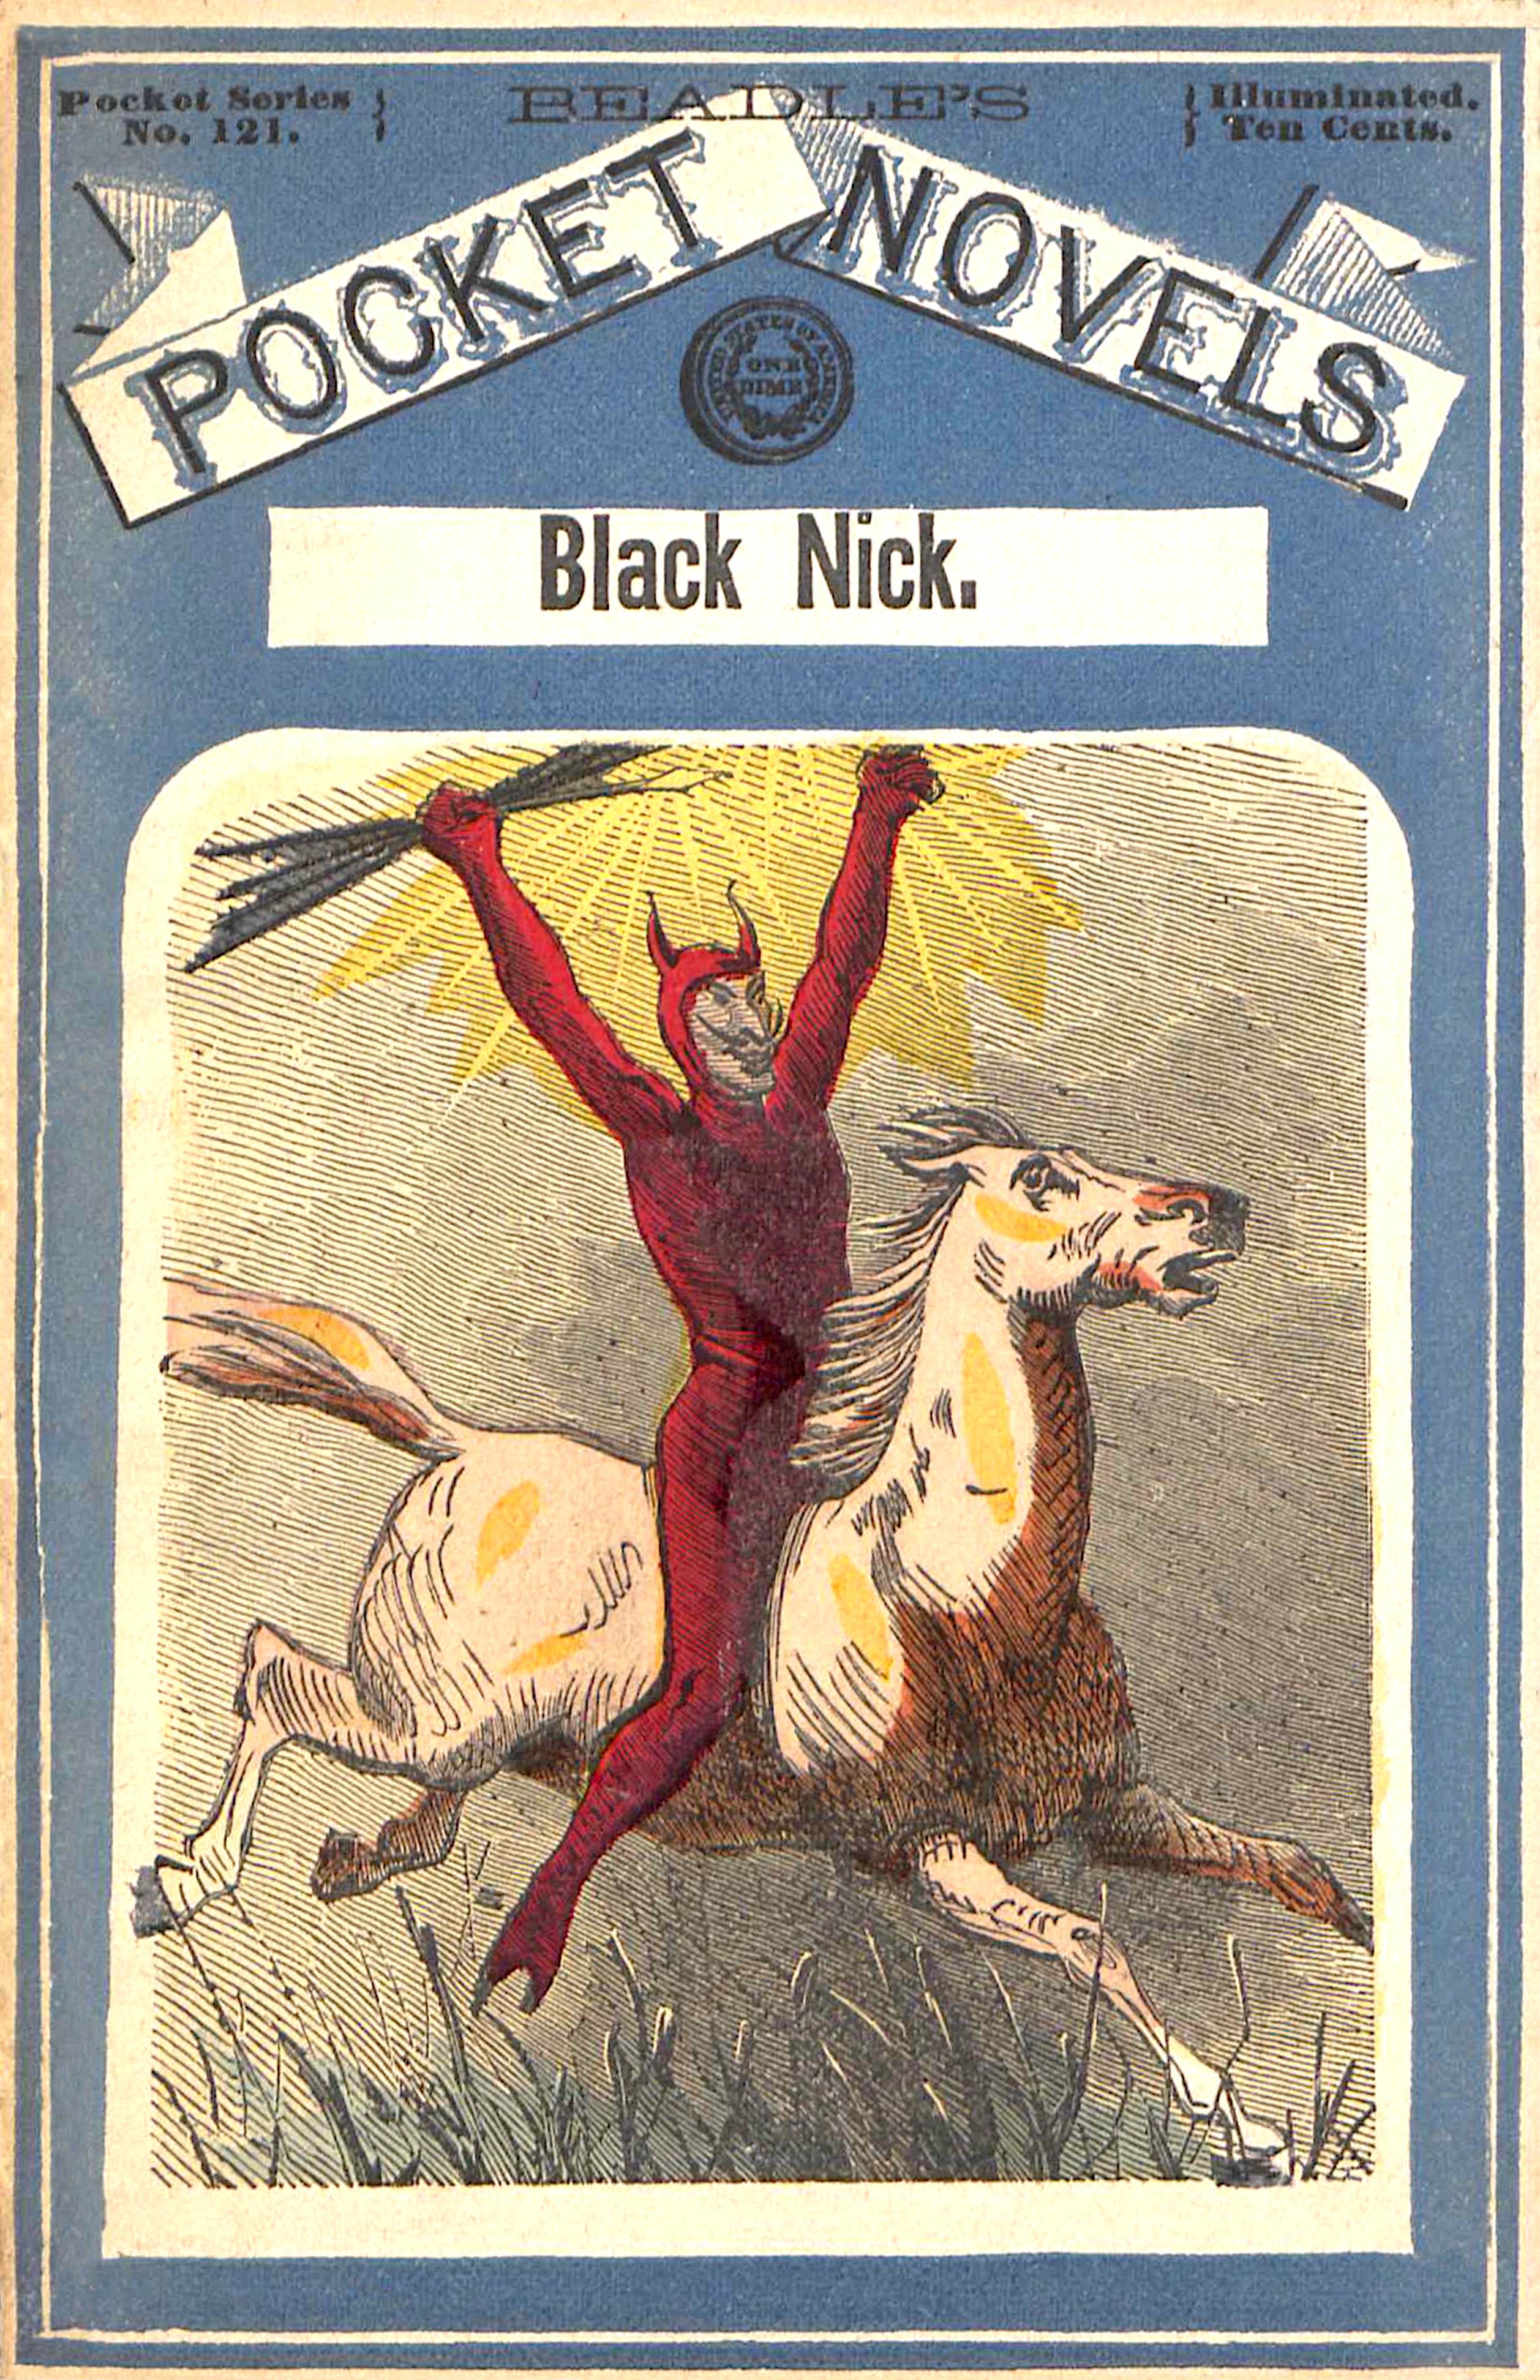 Siyah Nick, tepe keşişi; veya, Kefalet edilmiş suç: Burgoyne'un teslim oluşunun hikayesi